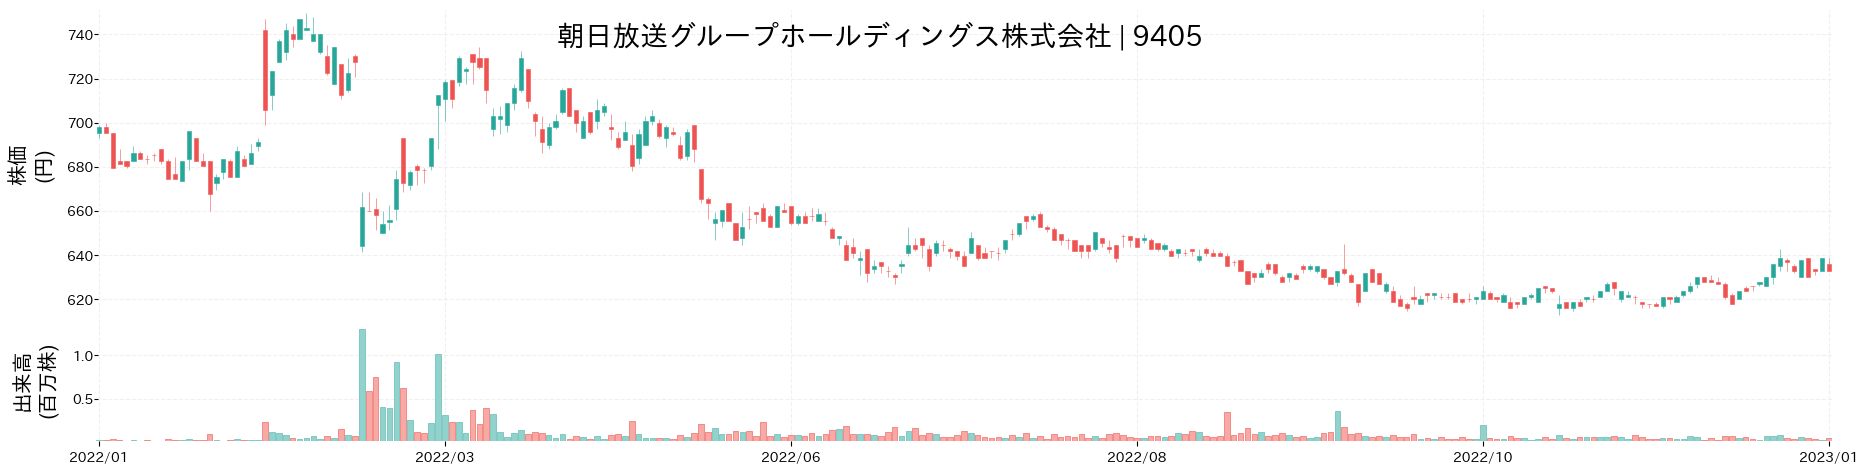 朝日放送グループホールディングスの株価推移(2022)